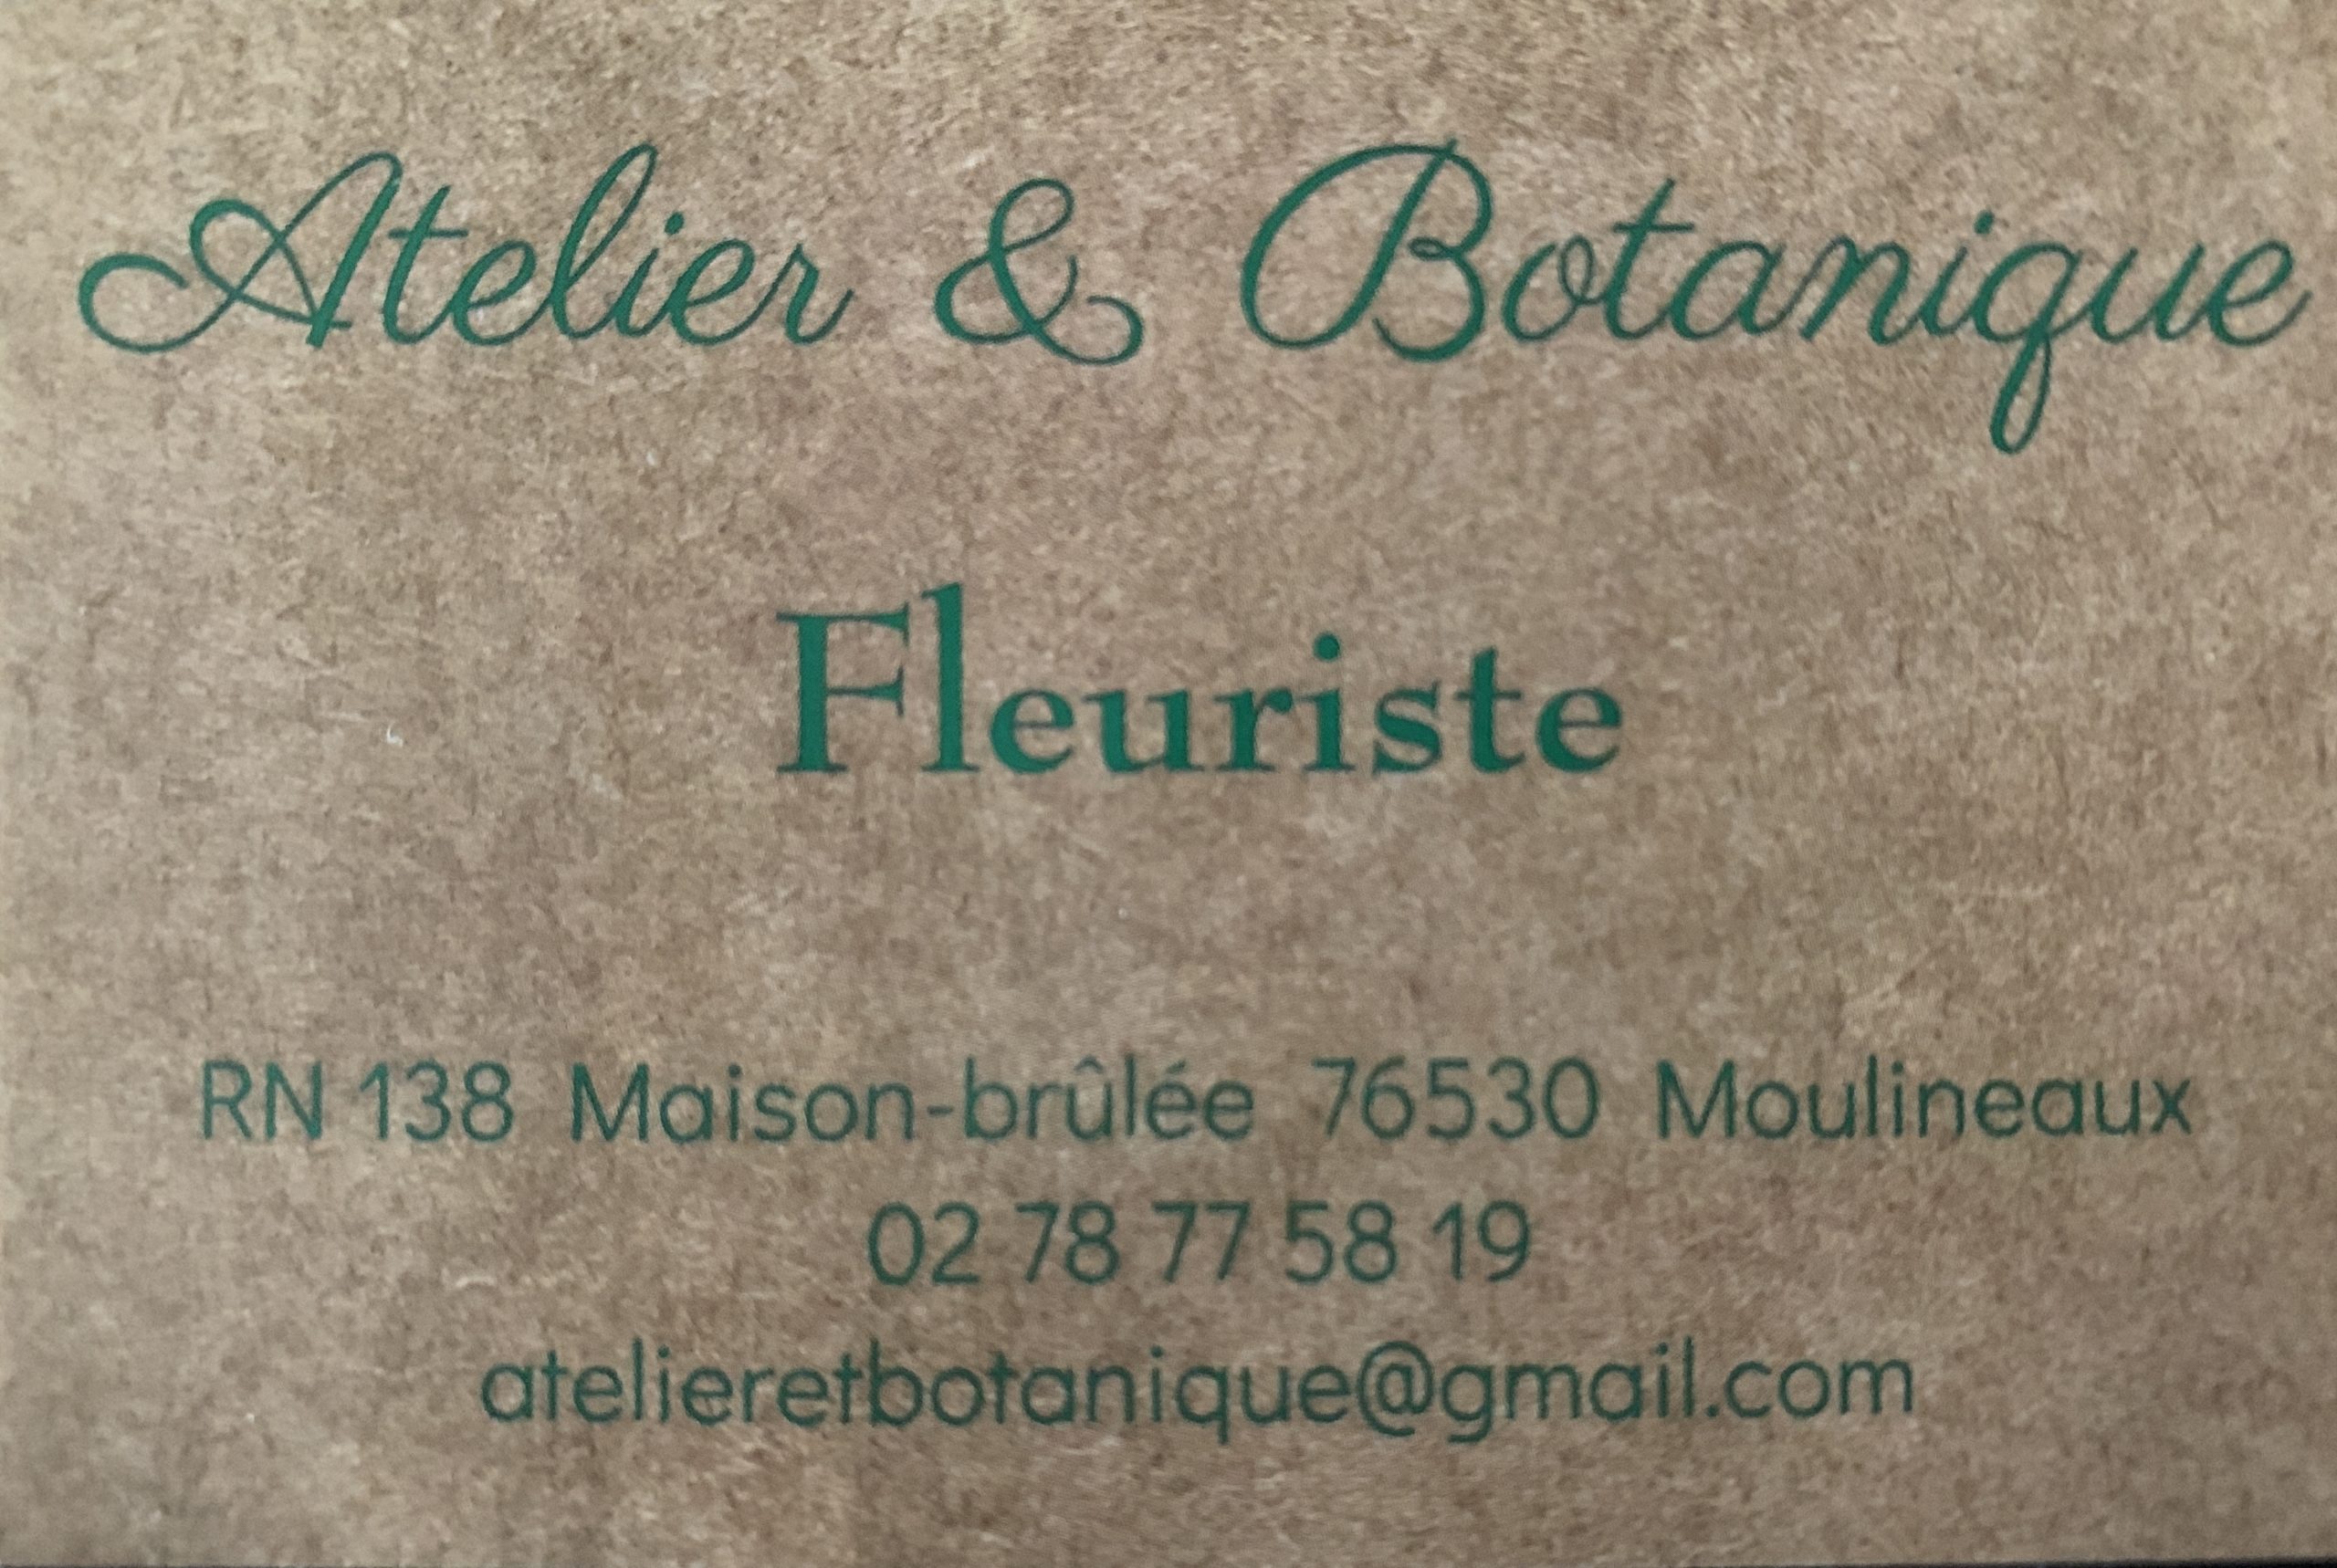 Atelier & Botanique